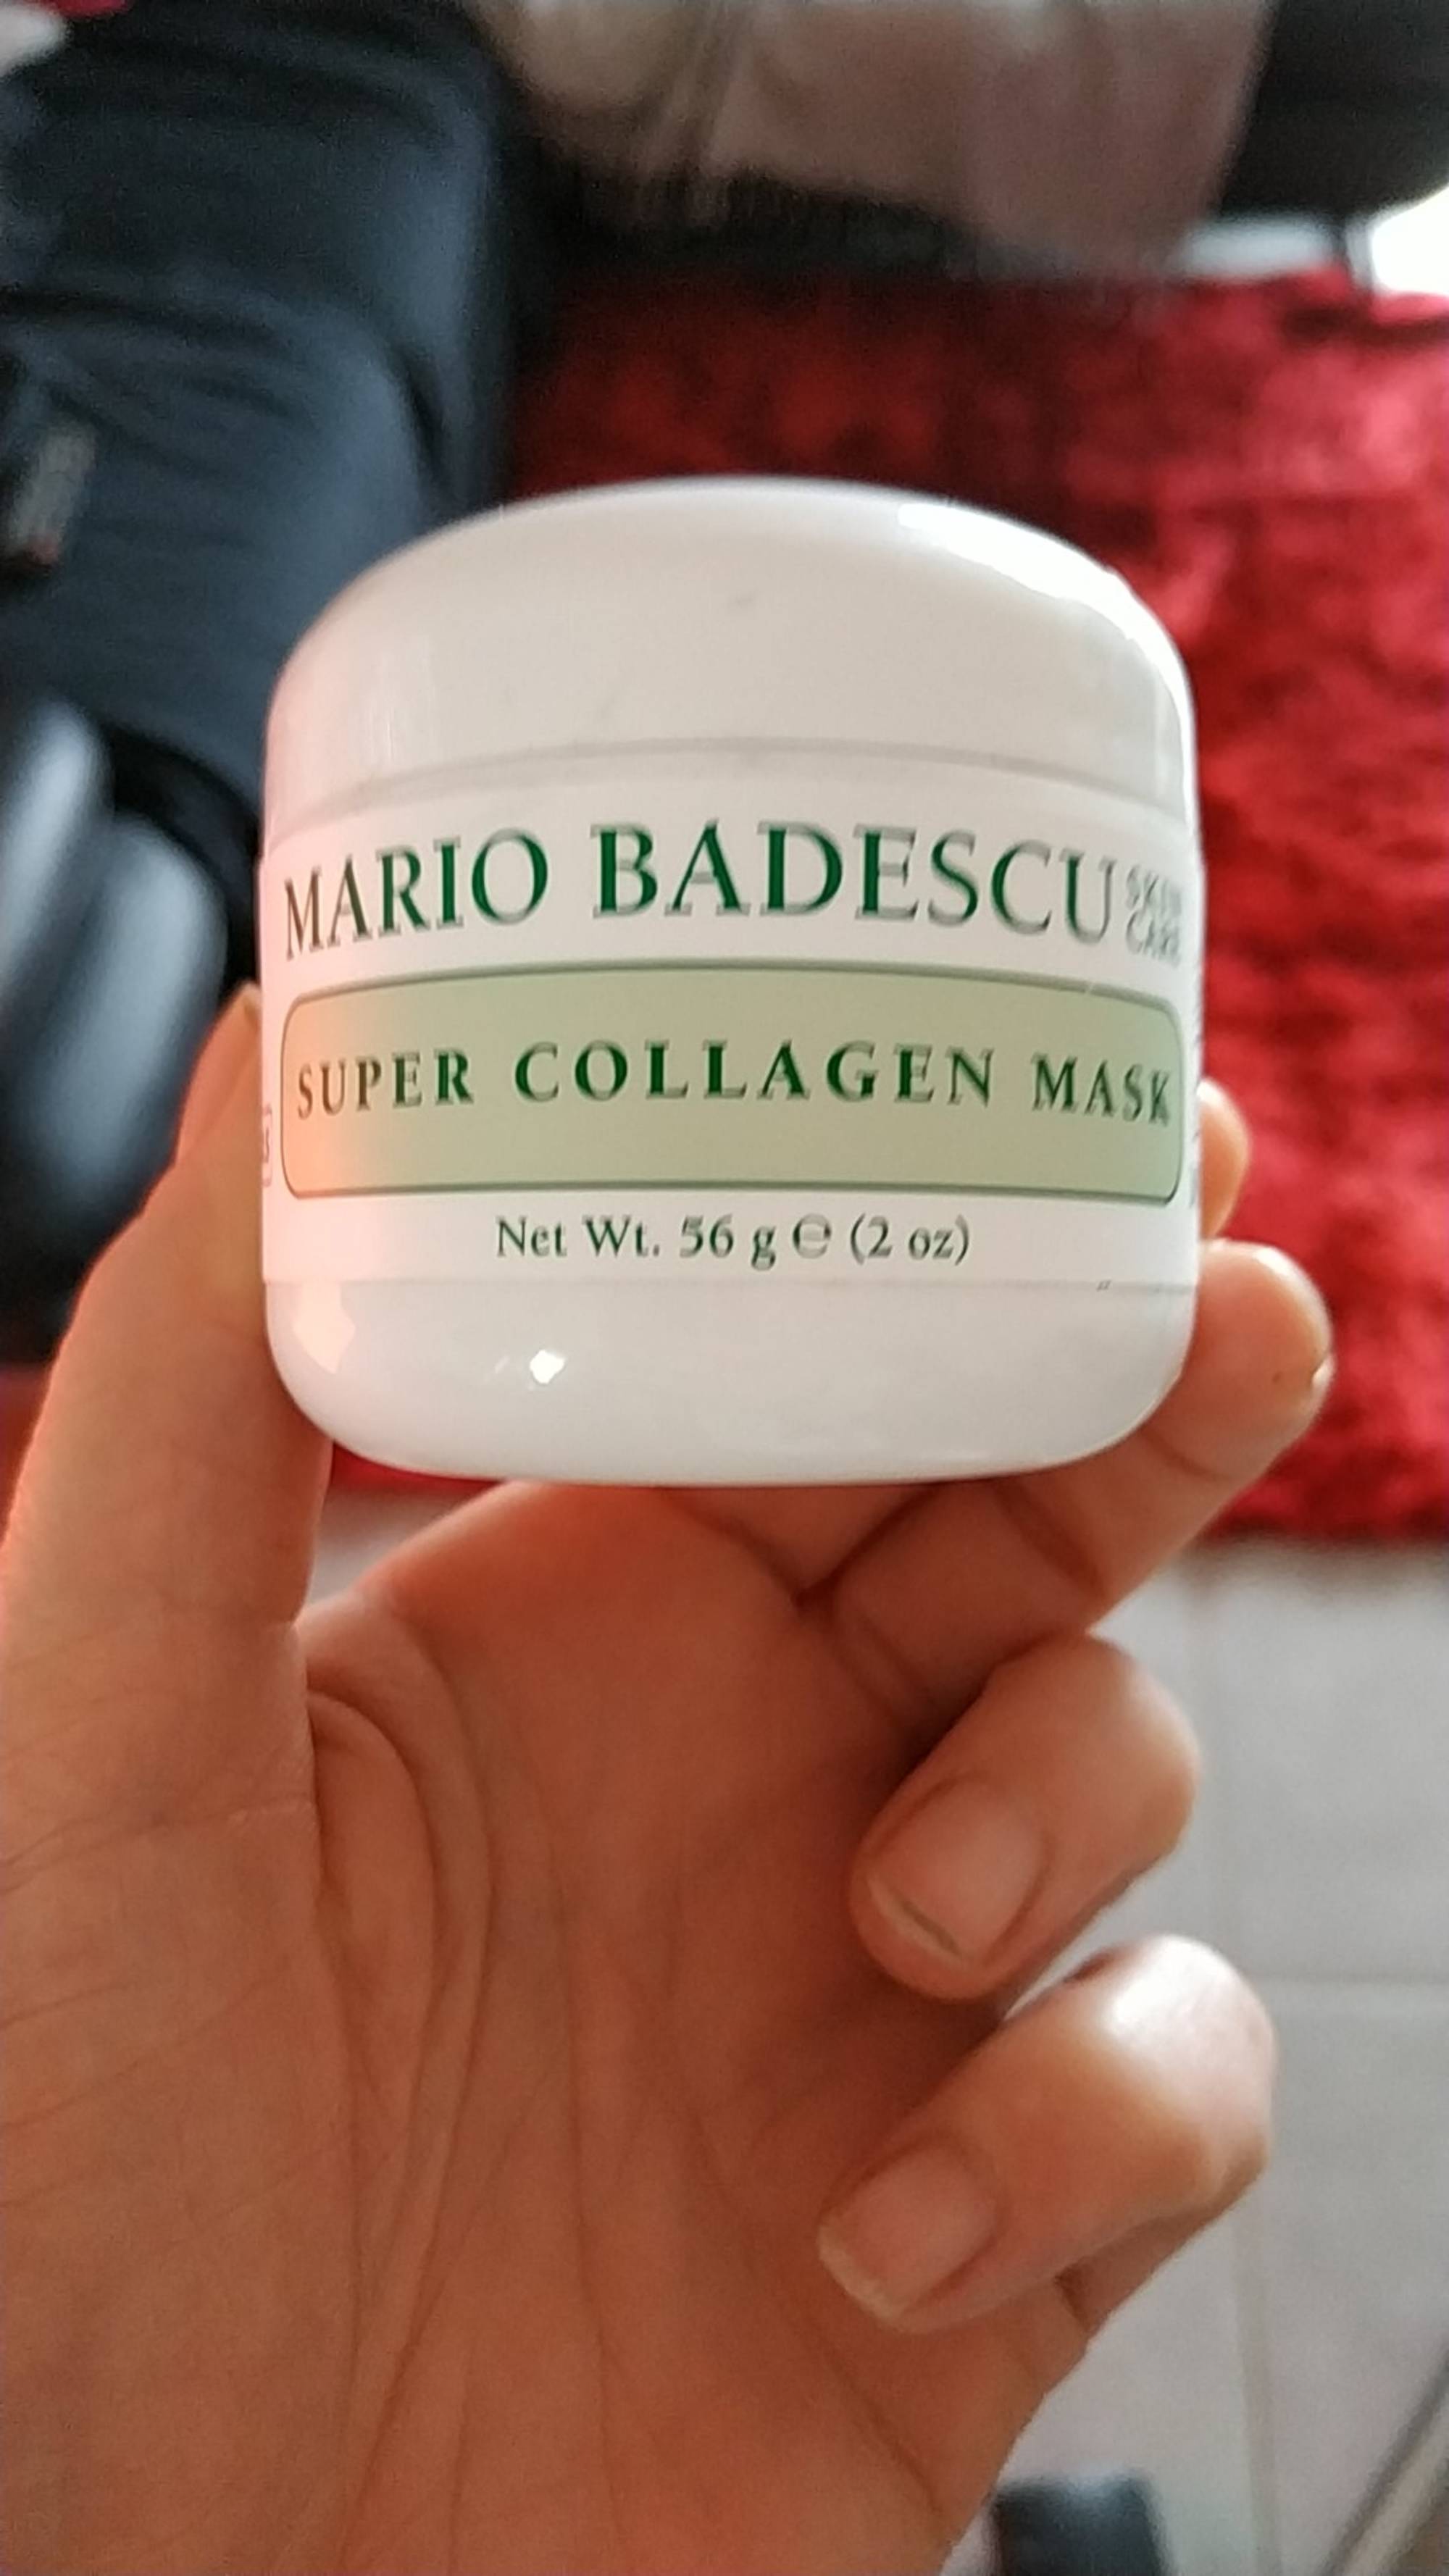 MARIO BADESCU - Super collagen mask